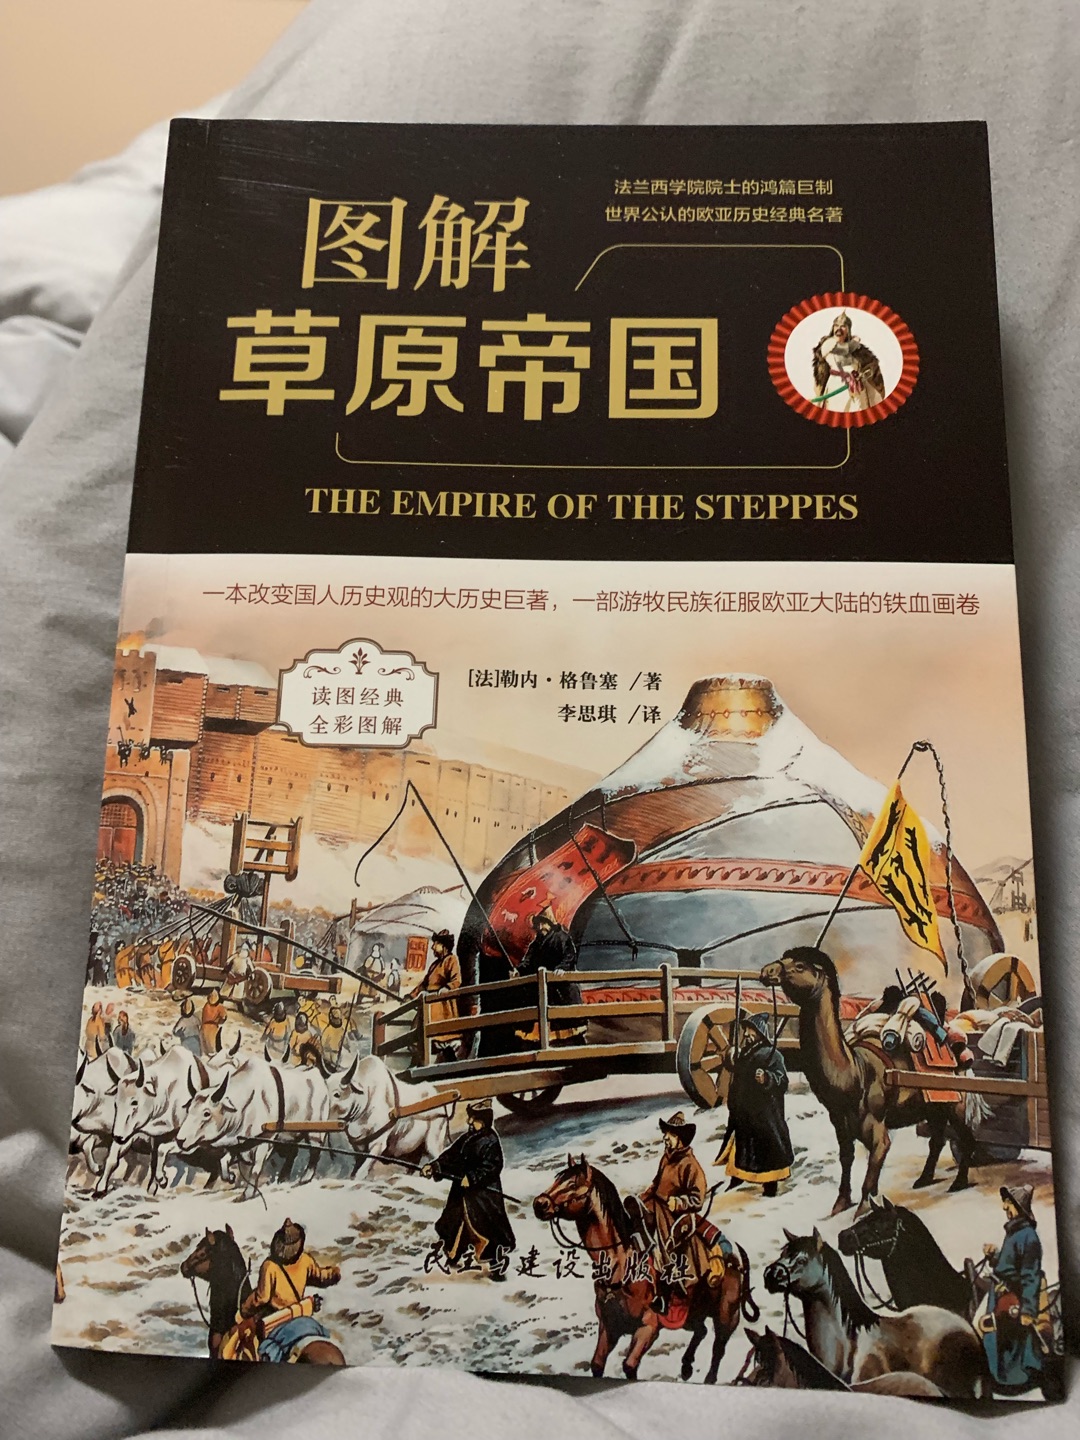 很好的书，从不同的史观，不同的角度看。很好。可惜在蒙古之前写的太少